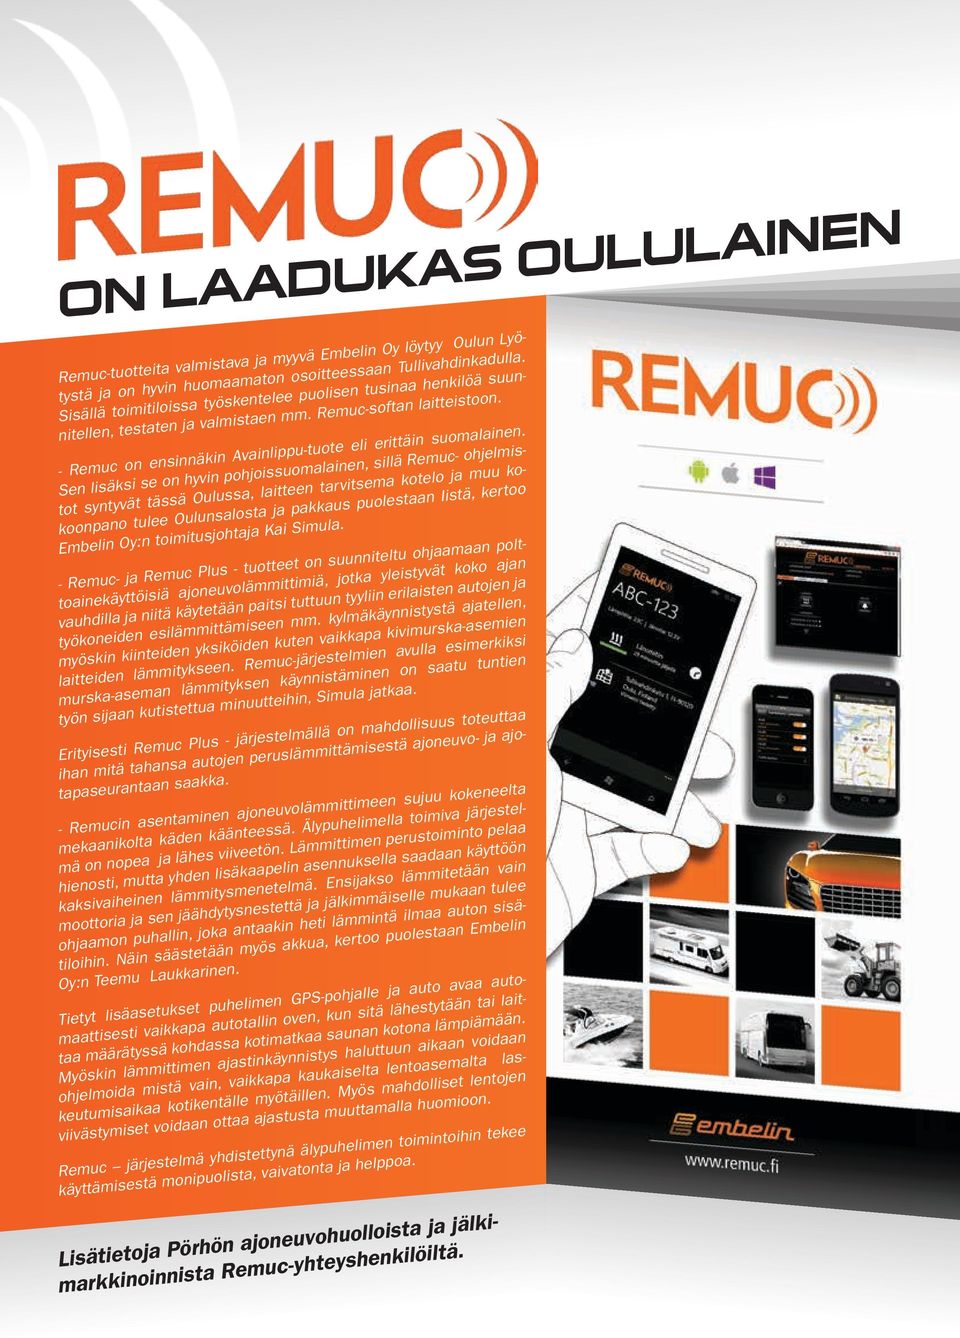 Sen lisäksi se on hyvin pohjoissuomalainen, sillä Remuc- ohjelmistot syntyvät tässä Oulussa, laitteen tarvitsema kotelo ja muu kokoonpano tulee Oulunsalosta ja pakkaus puolestaan Iistä, kertoo